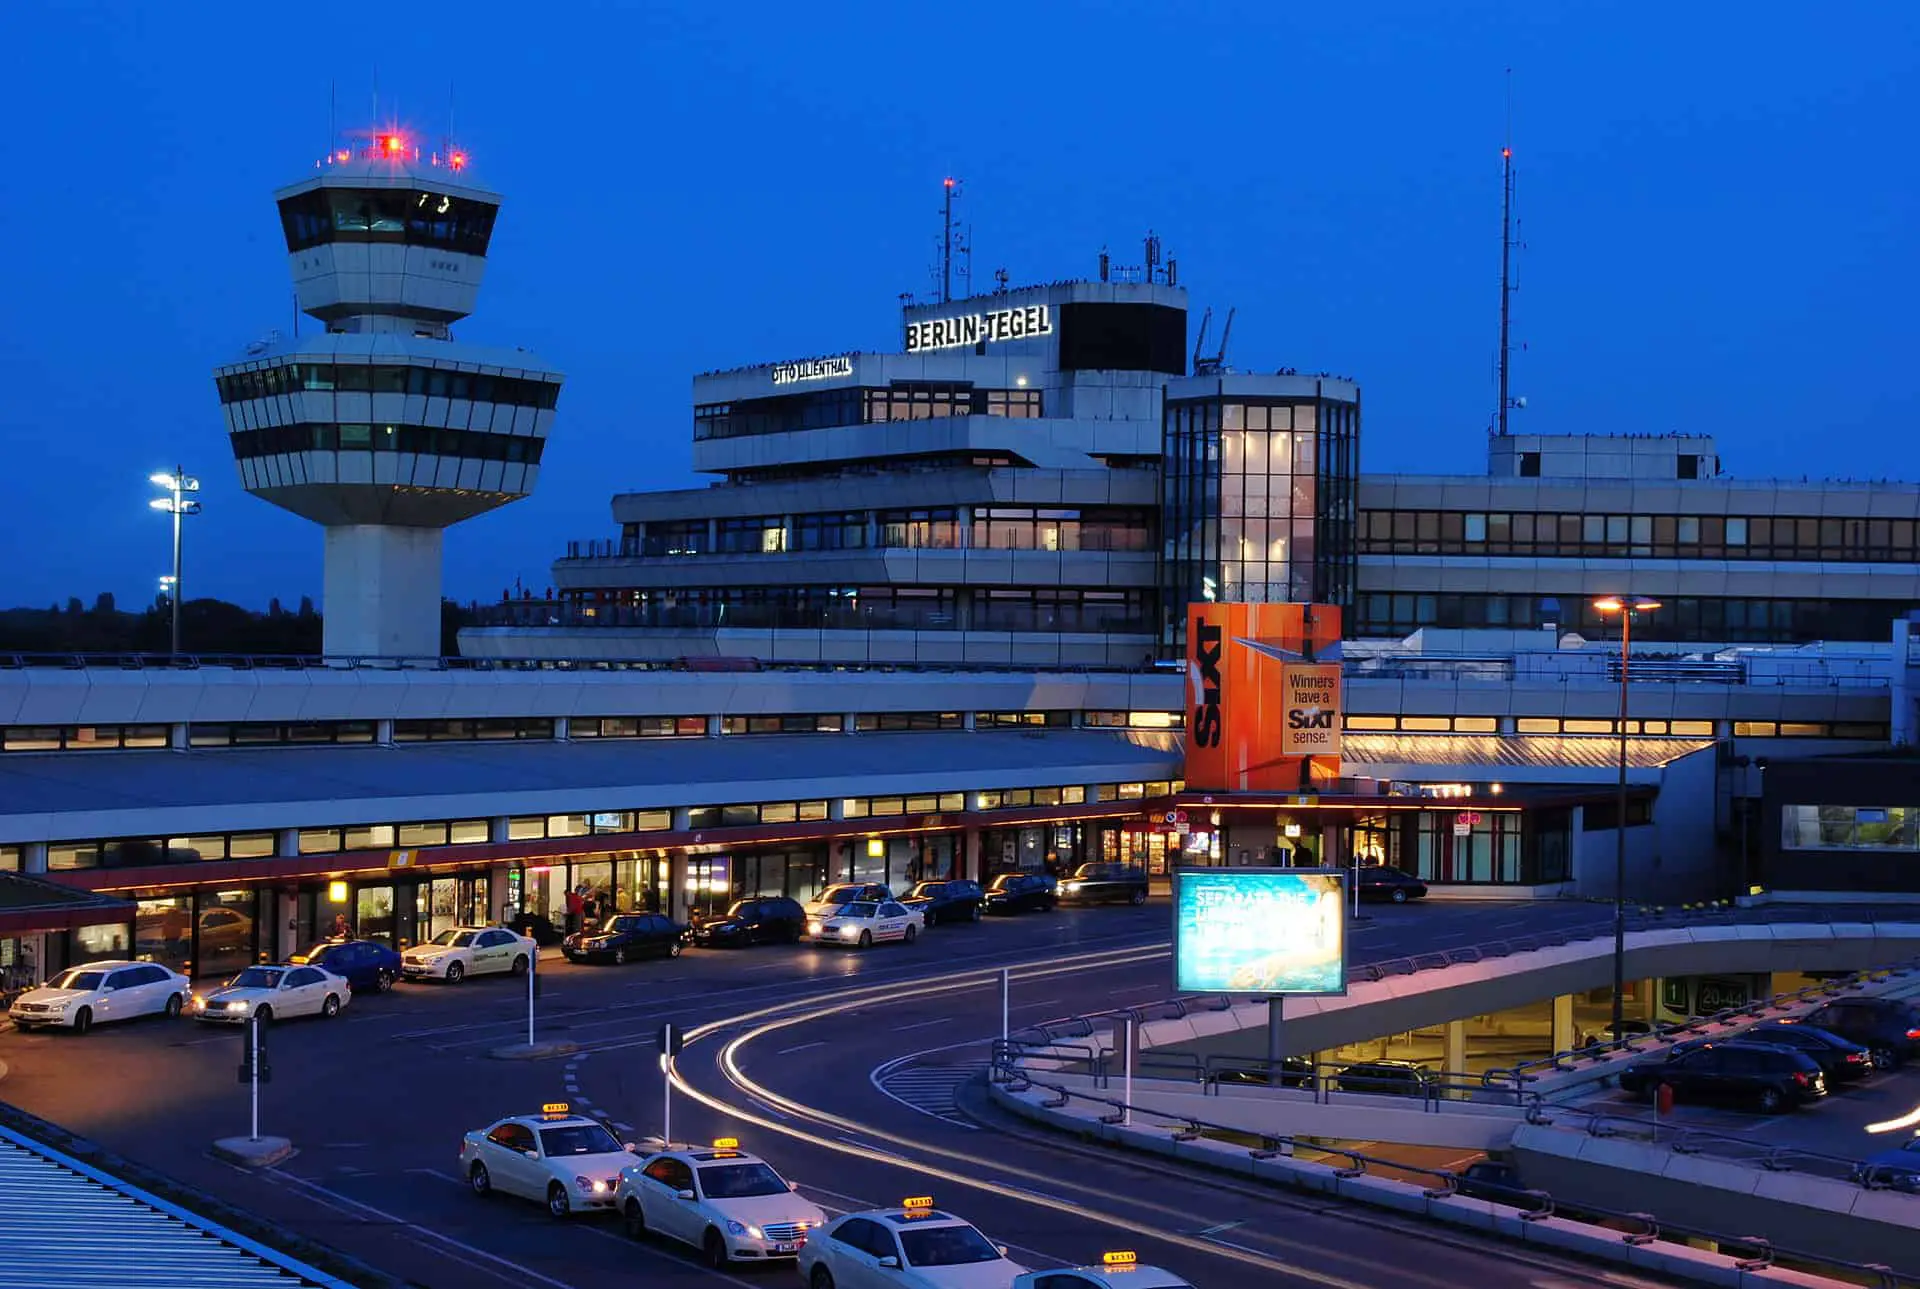 Berlin Tegel Airport Duty Free